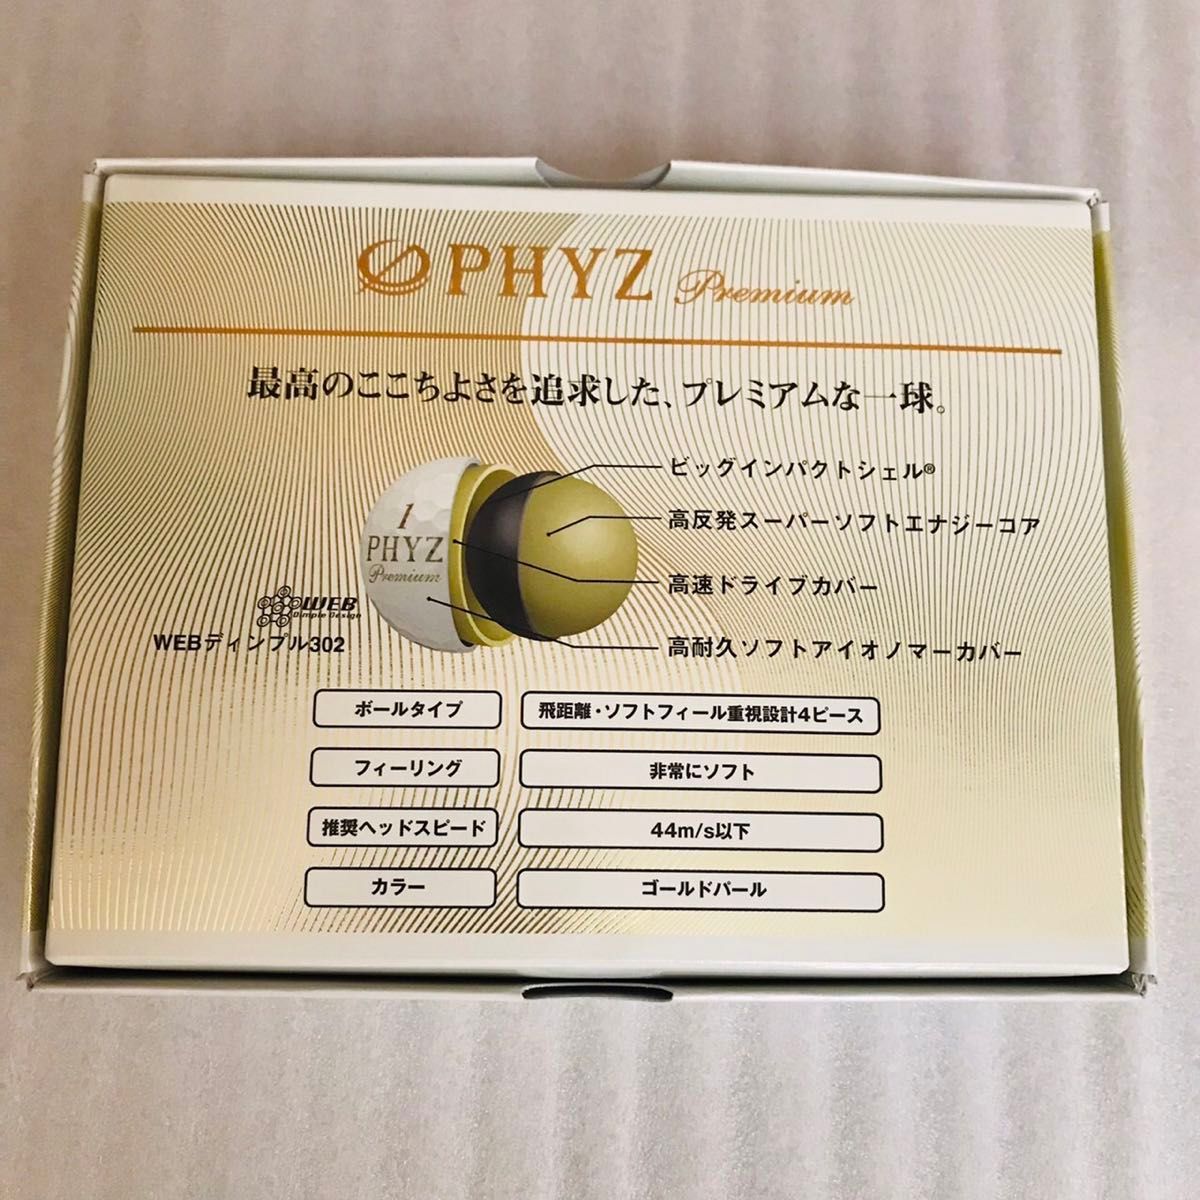 ブリヂストン PHYZ Premium 1ダース ゴールドパール 日本正規品 ゴルフボール 新品